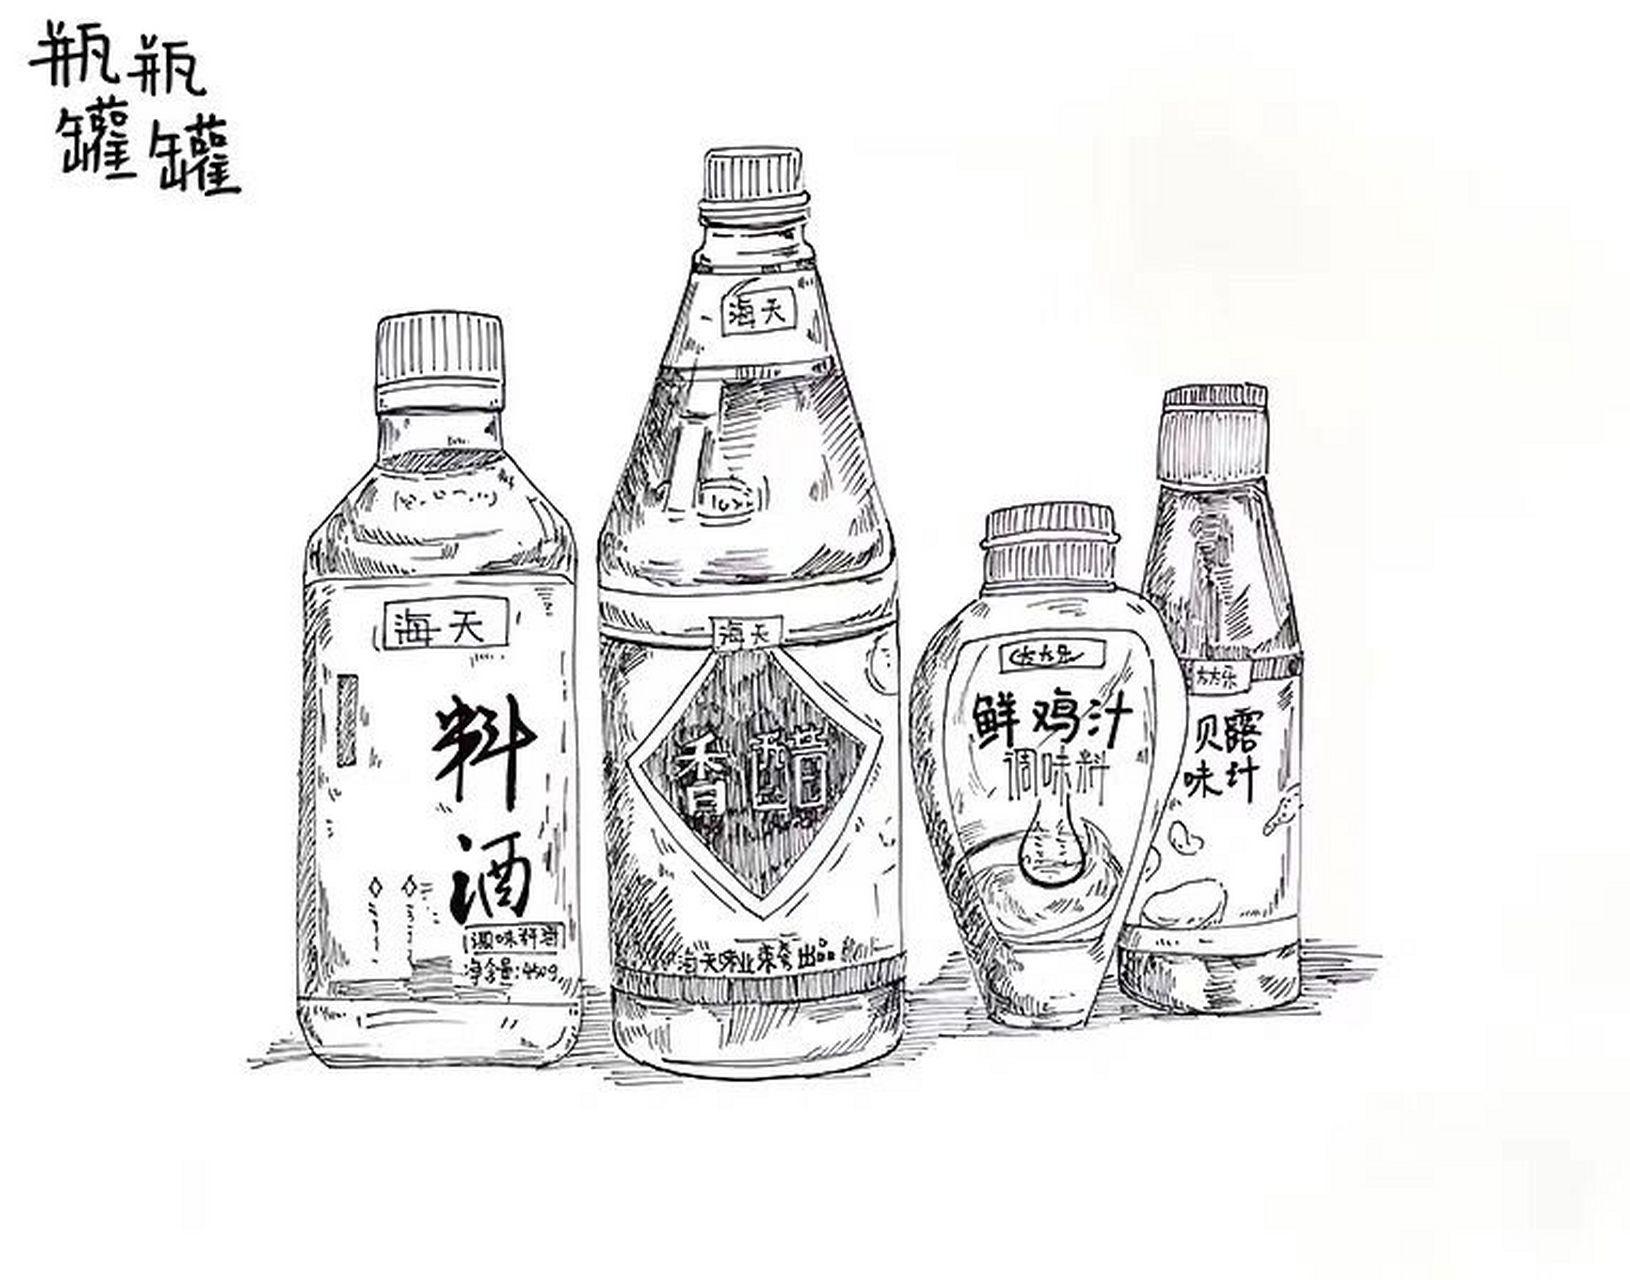 调味瓶设计草图图片